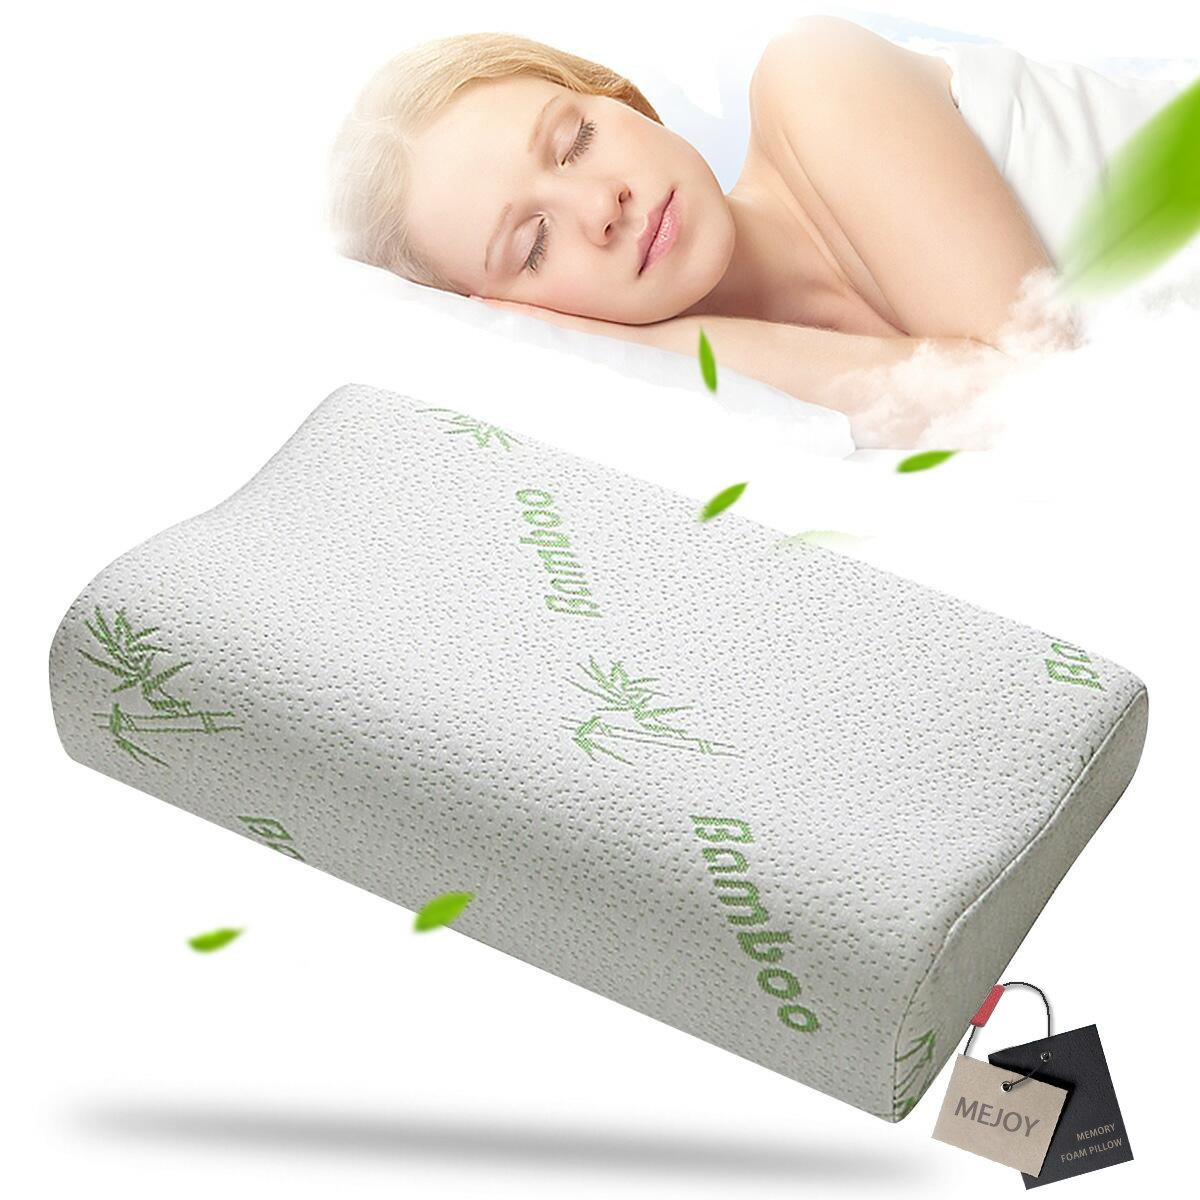 

Comfort Contour Orthopedic Bamboo Fiber Sleeping Pillow